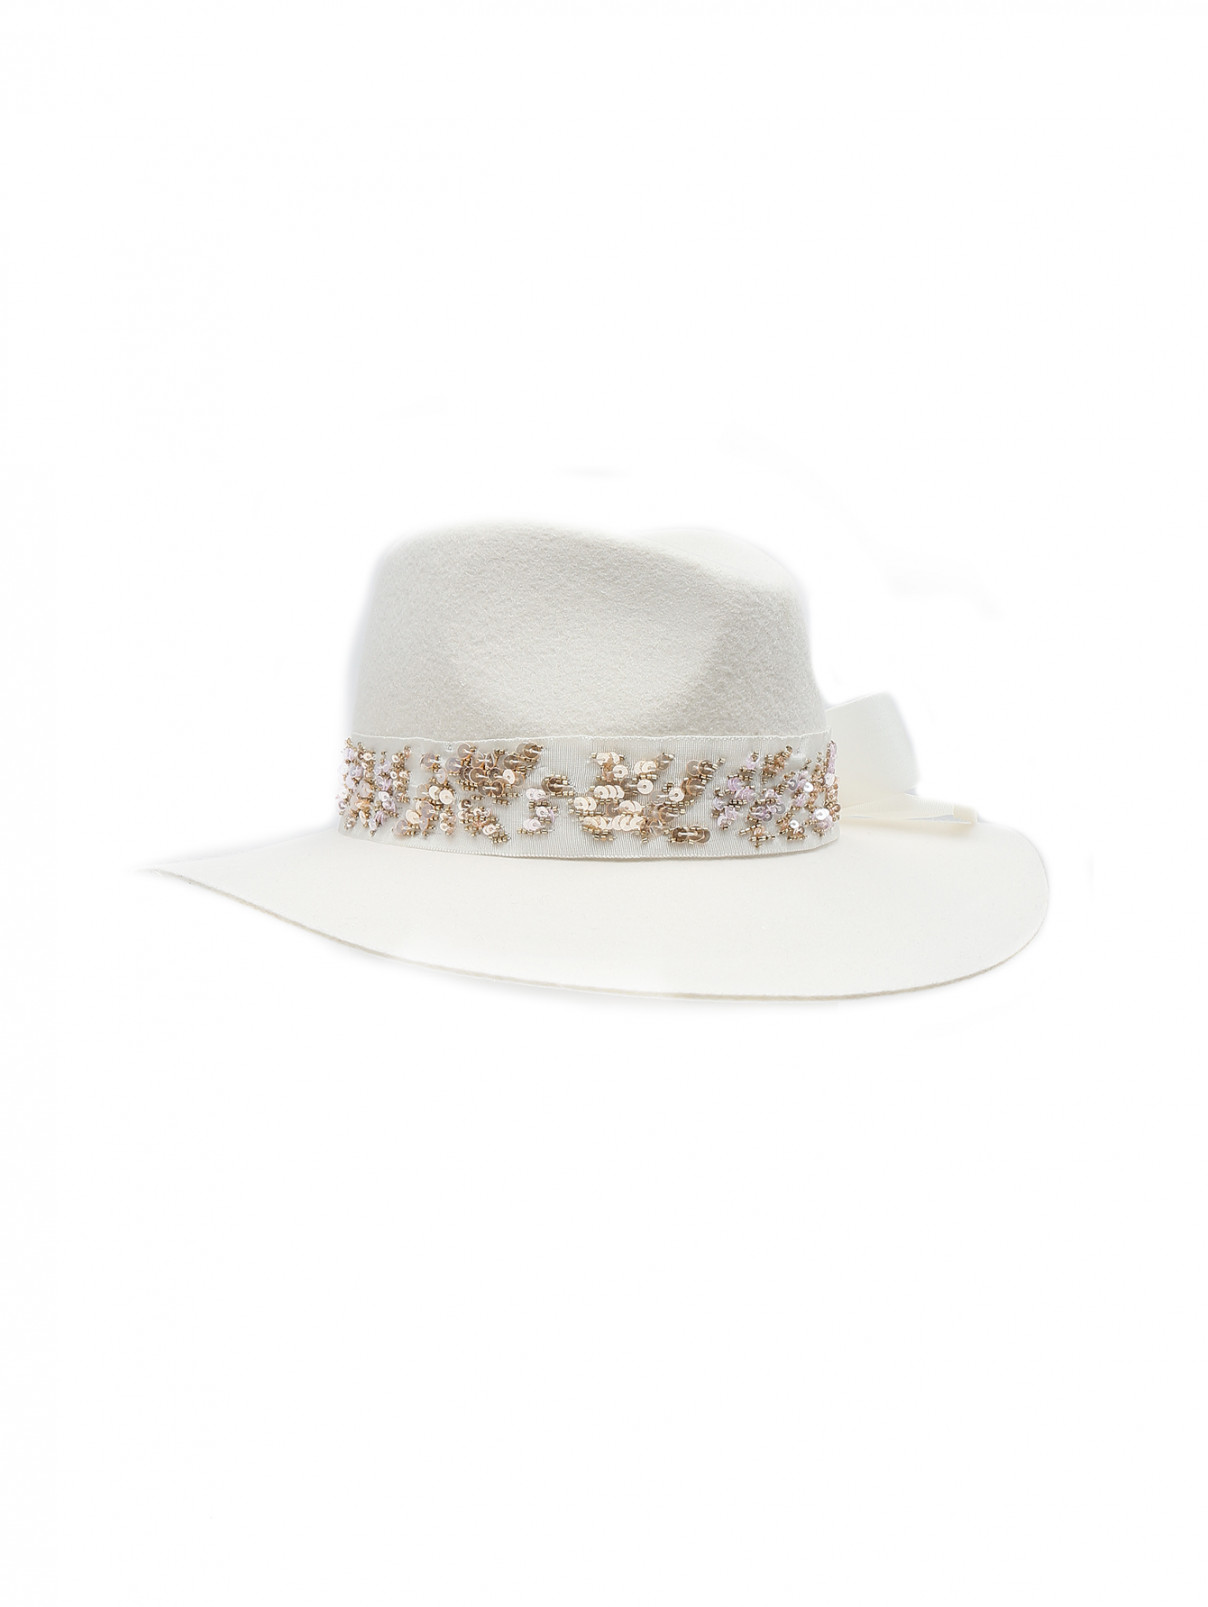 Шляпа Lorena Antoniazzi  –  Общий вид  – Цвет:  Белый